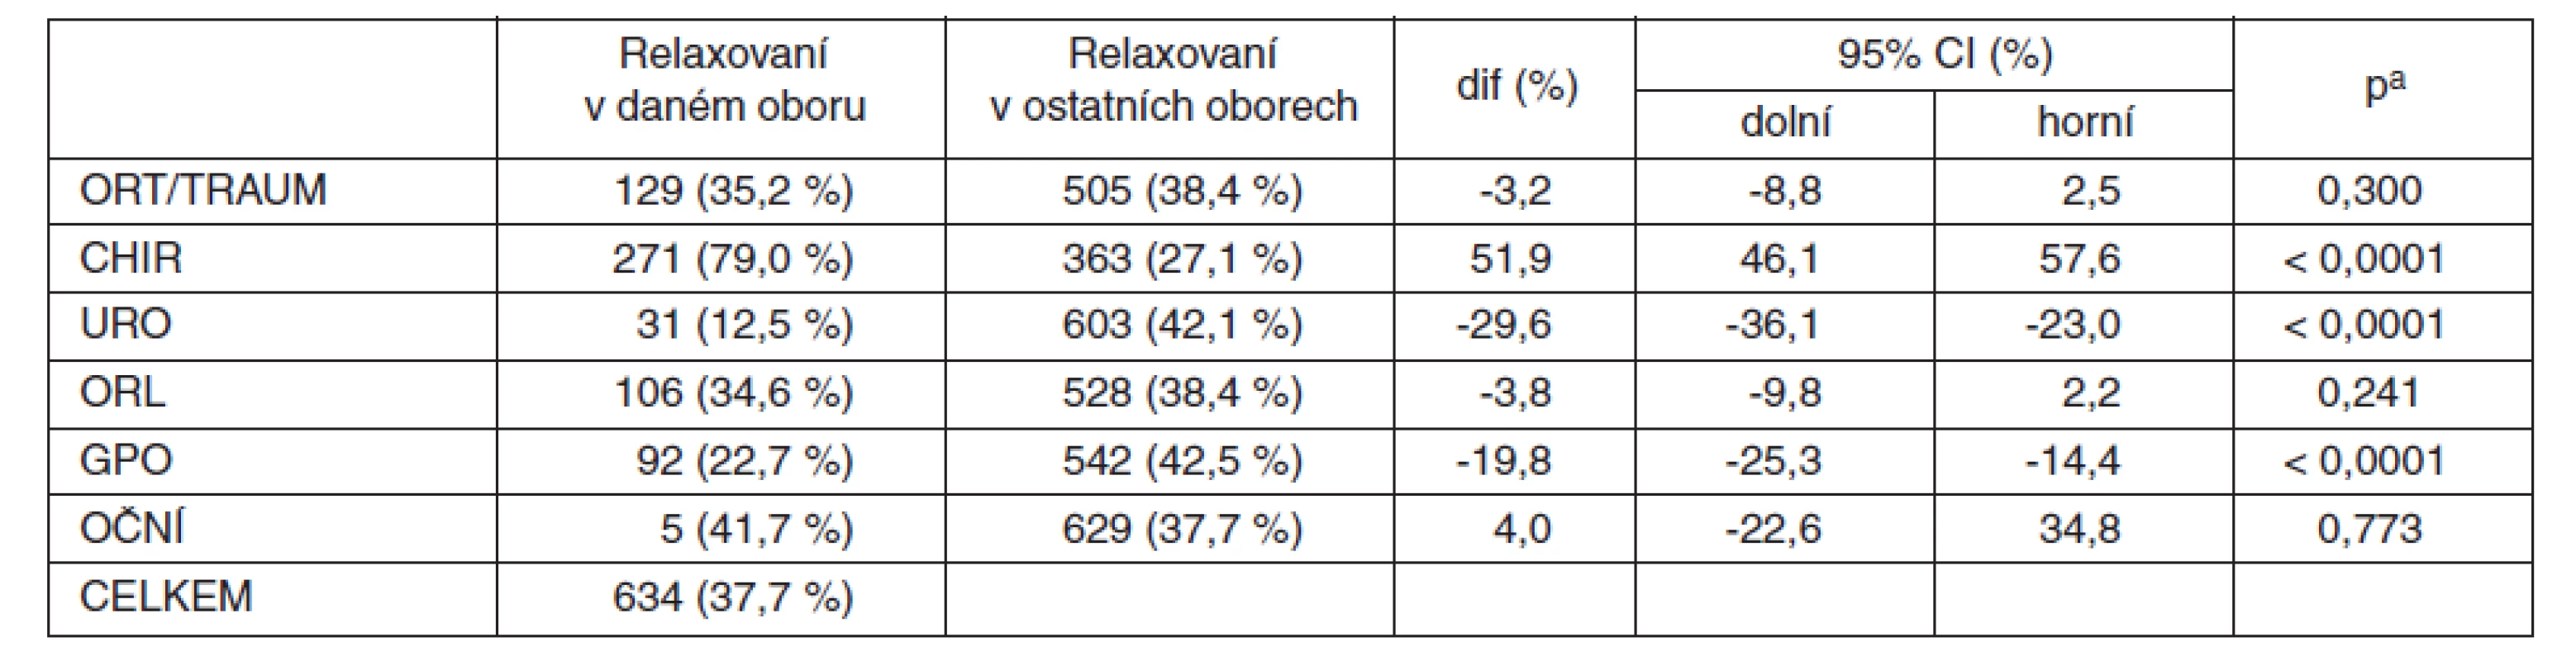 MBrelax2008 – srovnání podílu relaxovaných nemocných v CA podle jednotlivých oborů (procento relaxovaných v daném oboru z celkového počtu relaxovaných ve všech oborech)